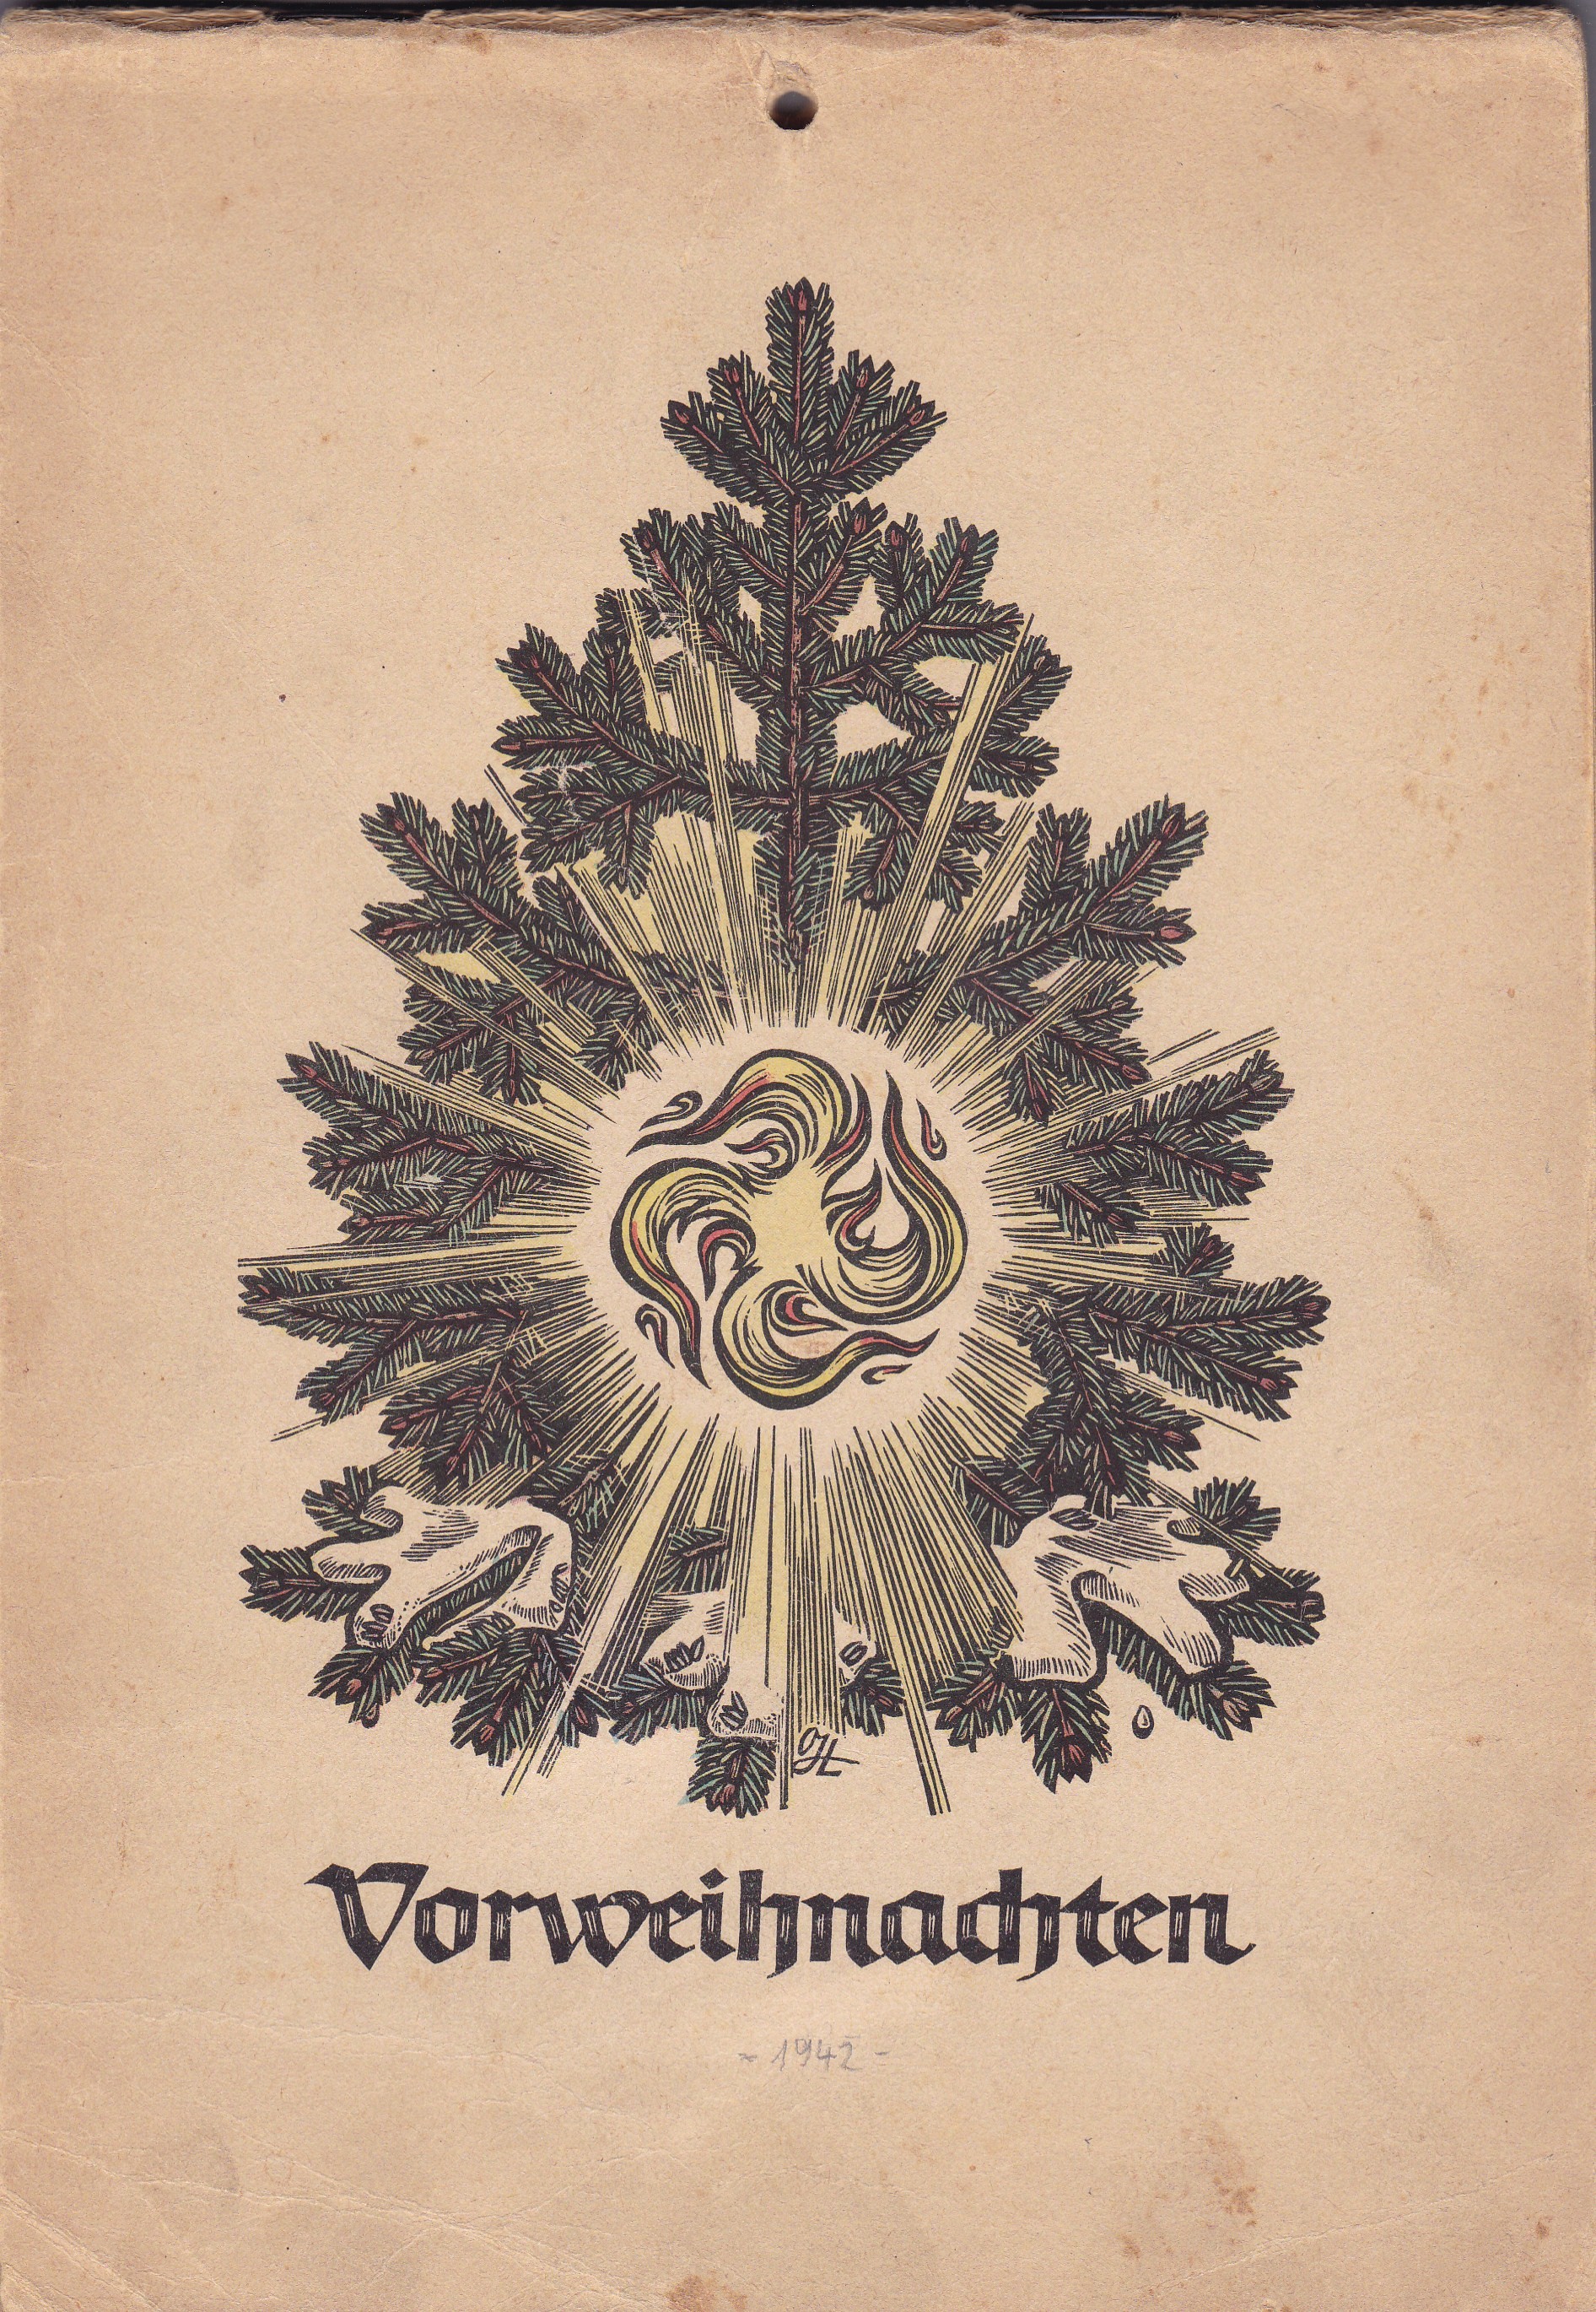 Adventskalender "Vorweihnachten" (RELíGIO – Westfälisches Museum für religiöse Kultur CC BY-NC-SA)